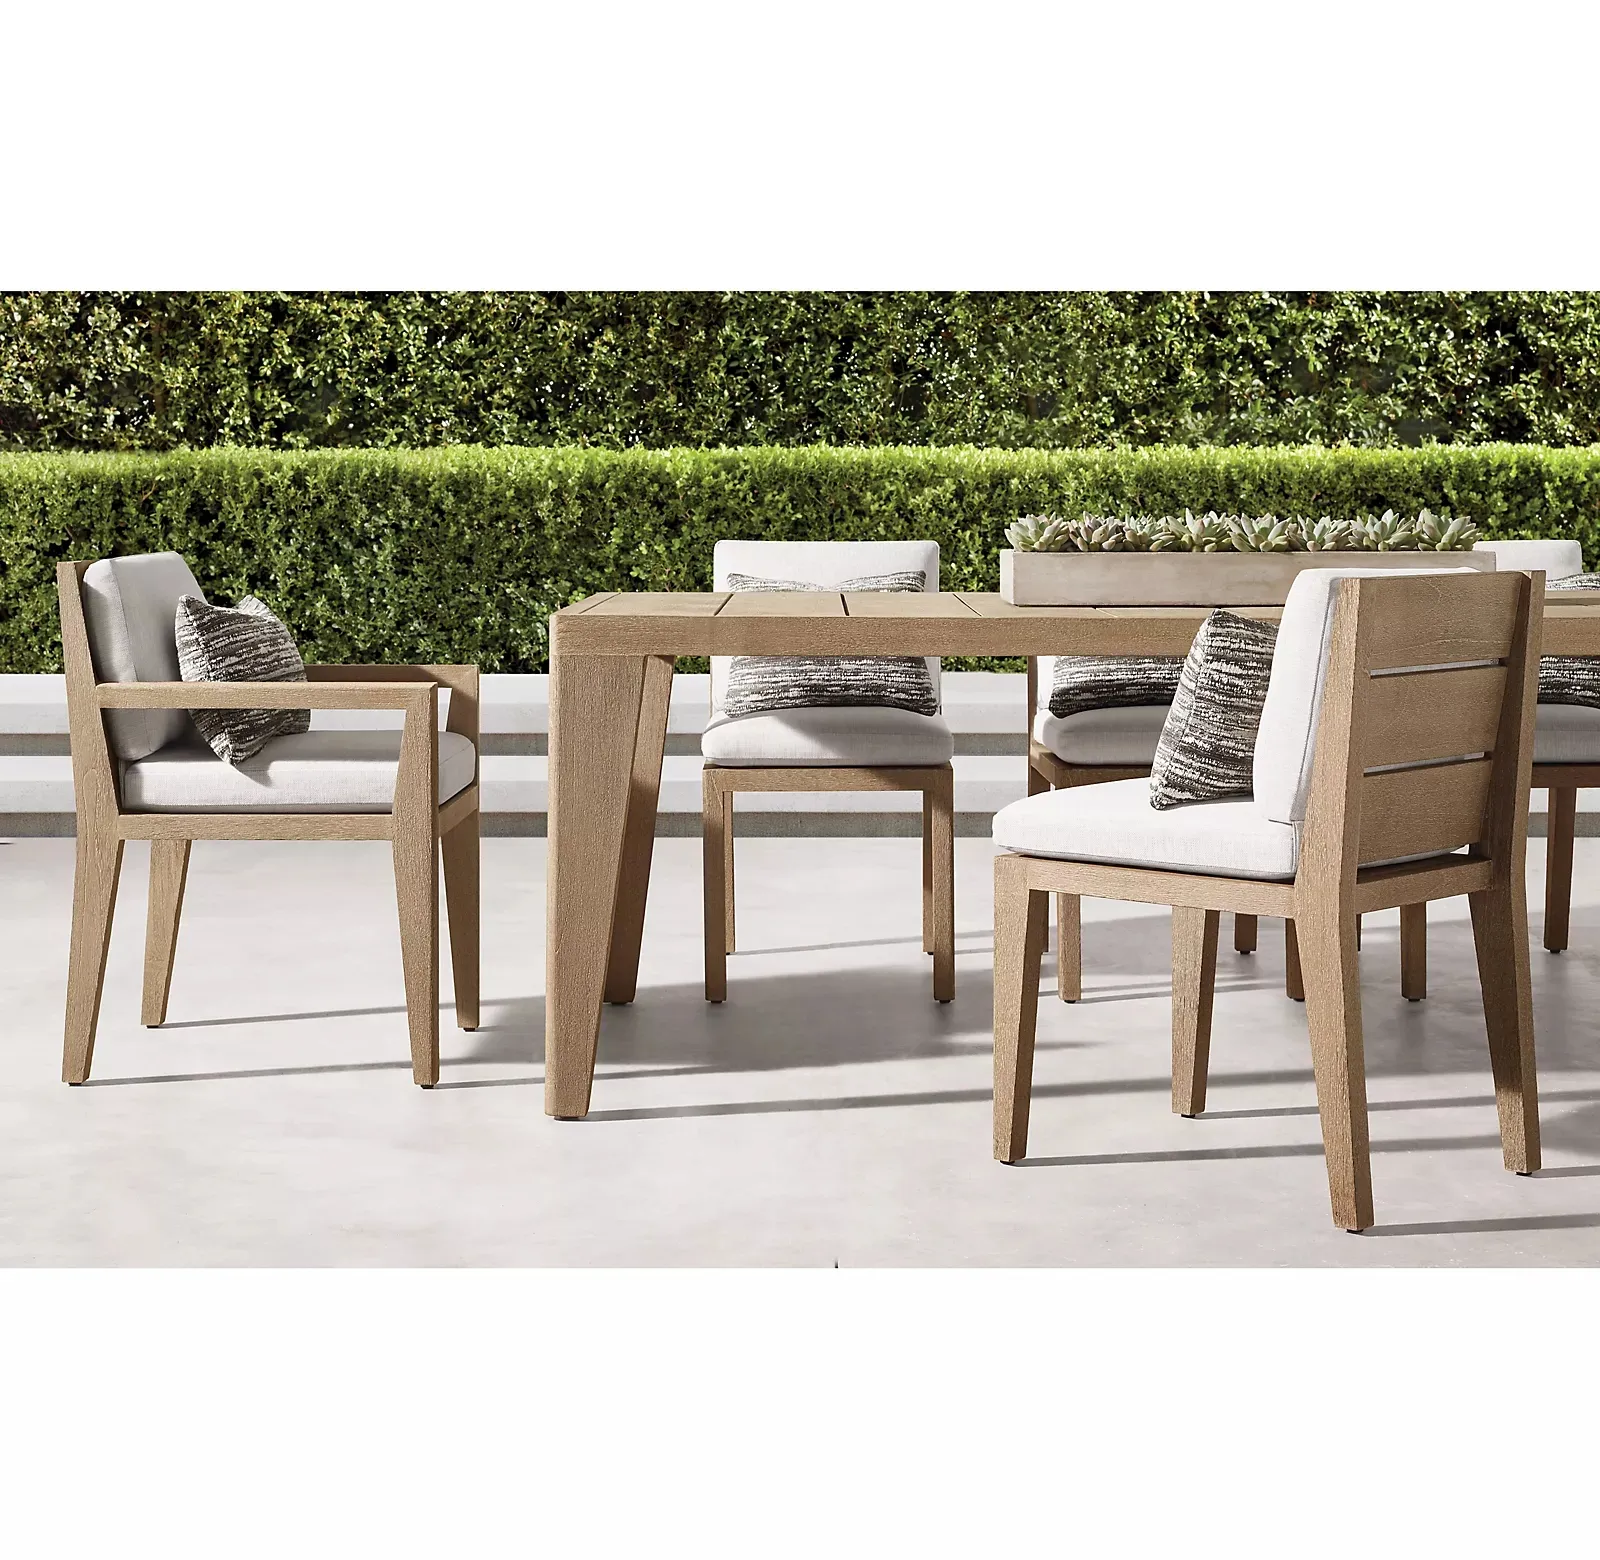 طاولة وكراسي خارجية من خشب الساج عالية الجودة مستطيلة الشكل لتنظيف أثاث الحدائق وسهلة التنظيف